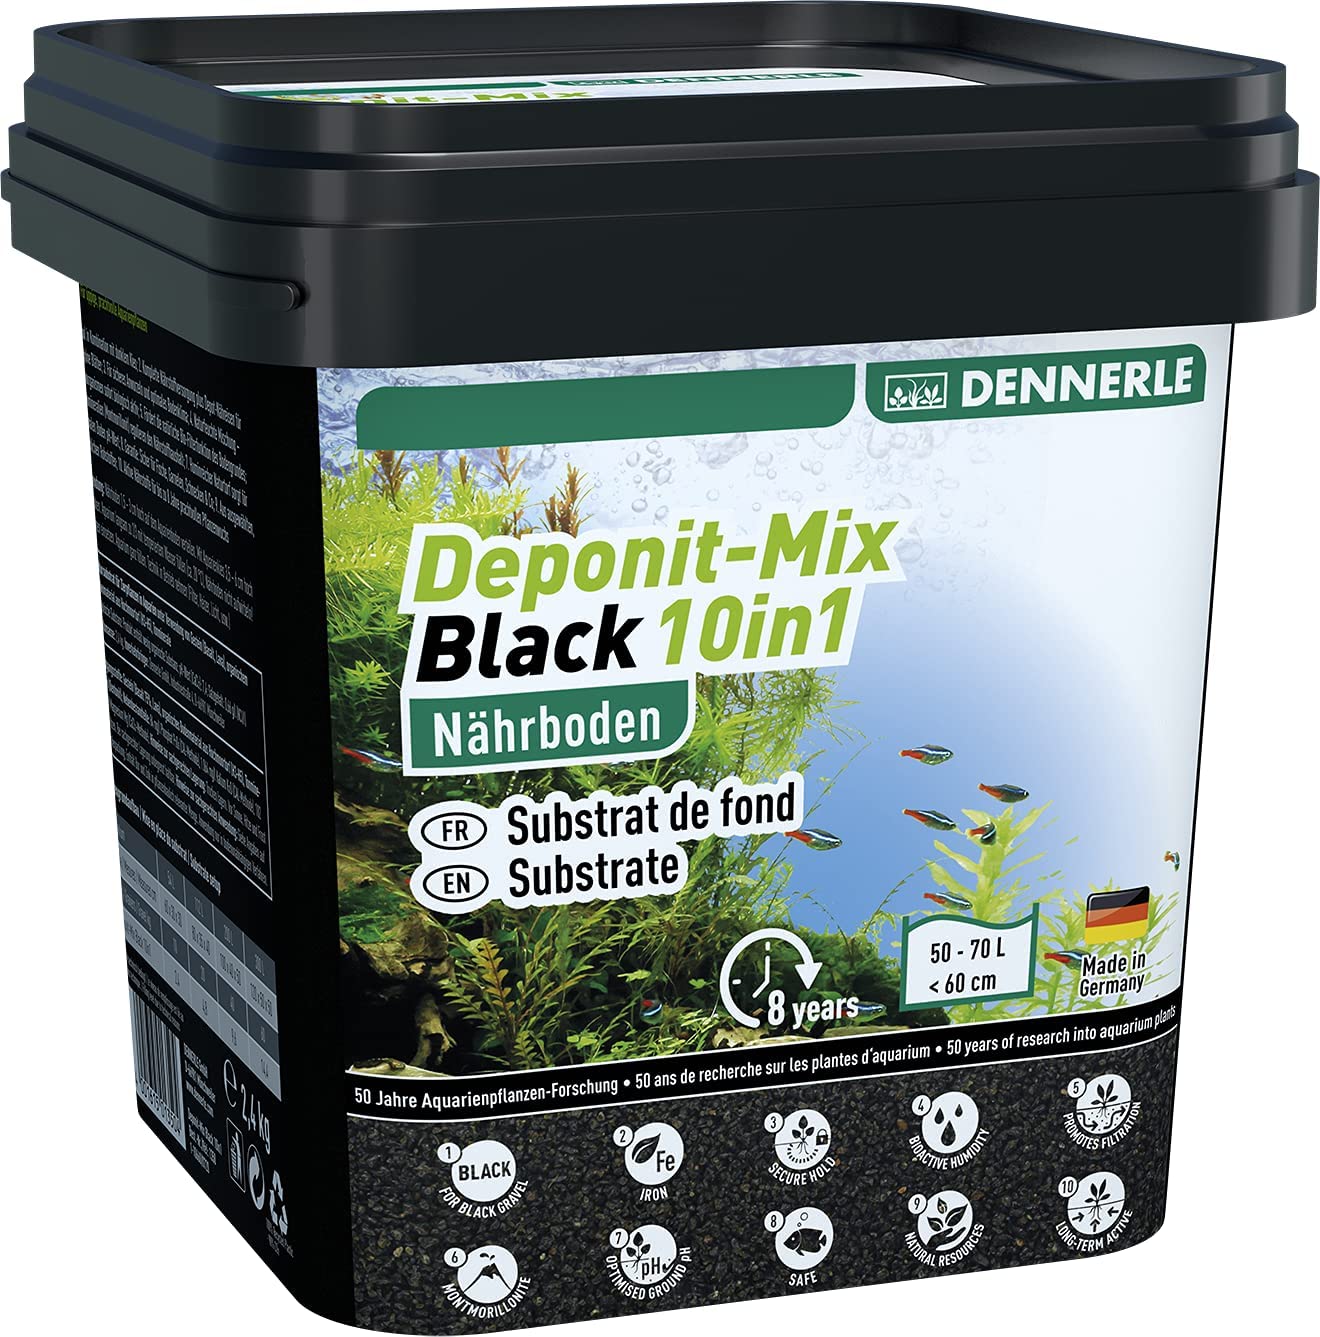 Dennerle Výživový substrát Deponit-Mix Black 10in1, 2,4kg